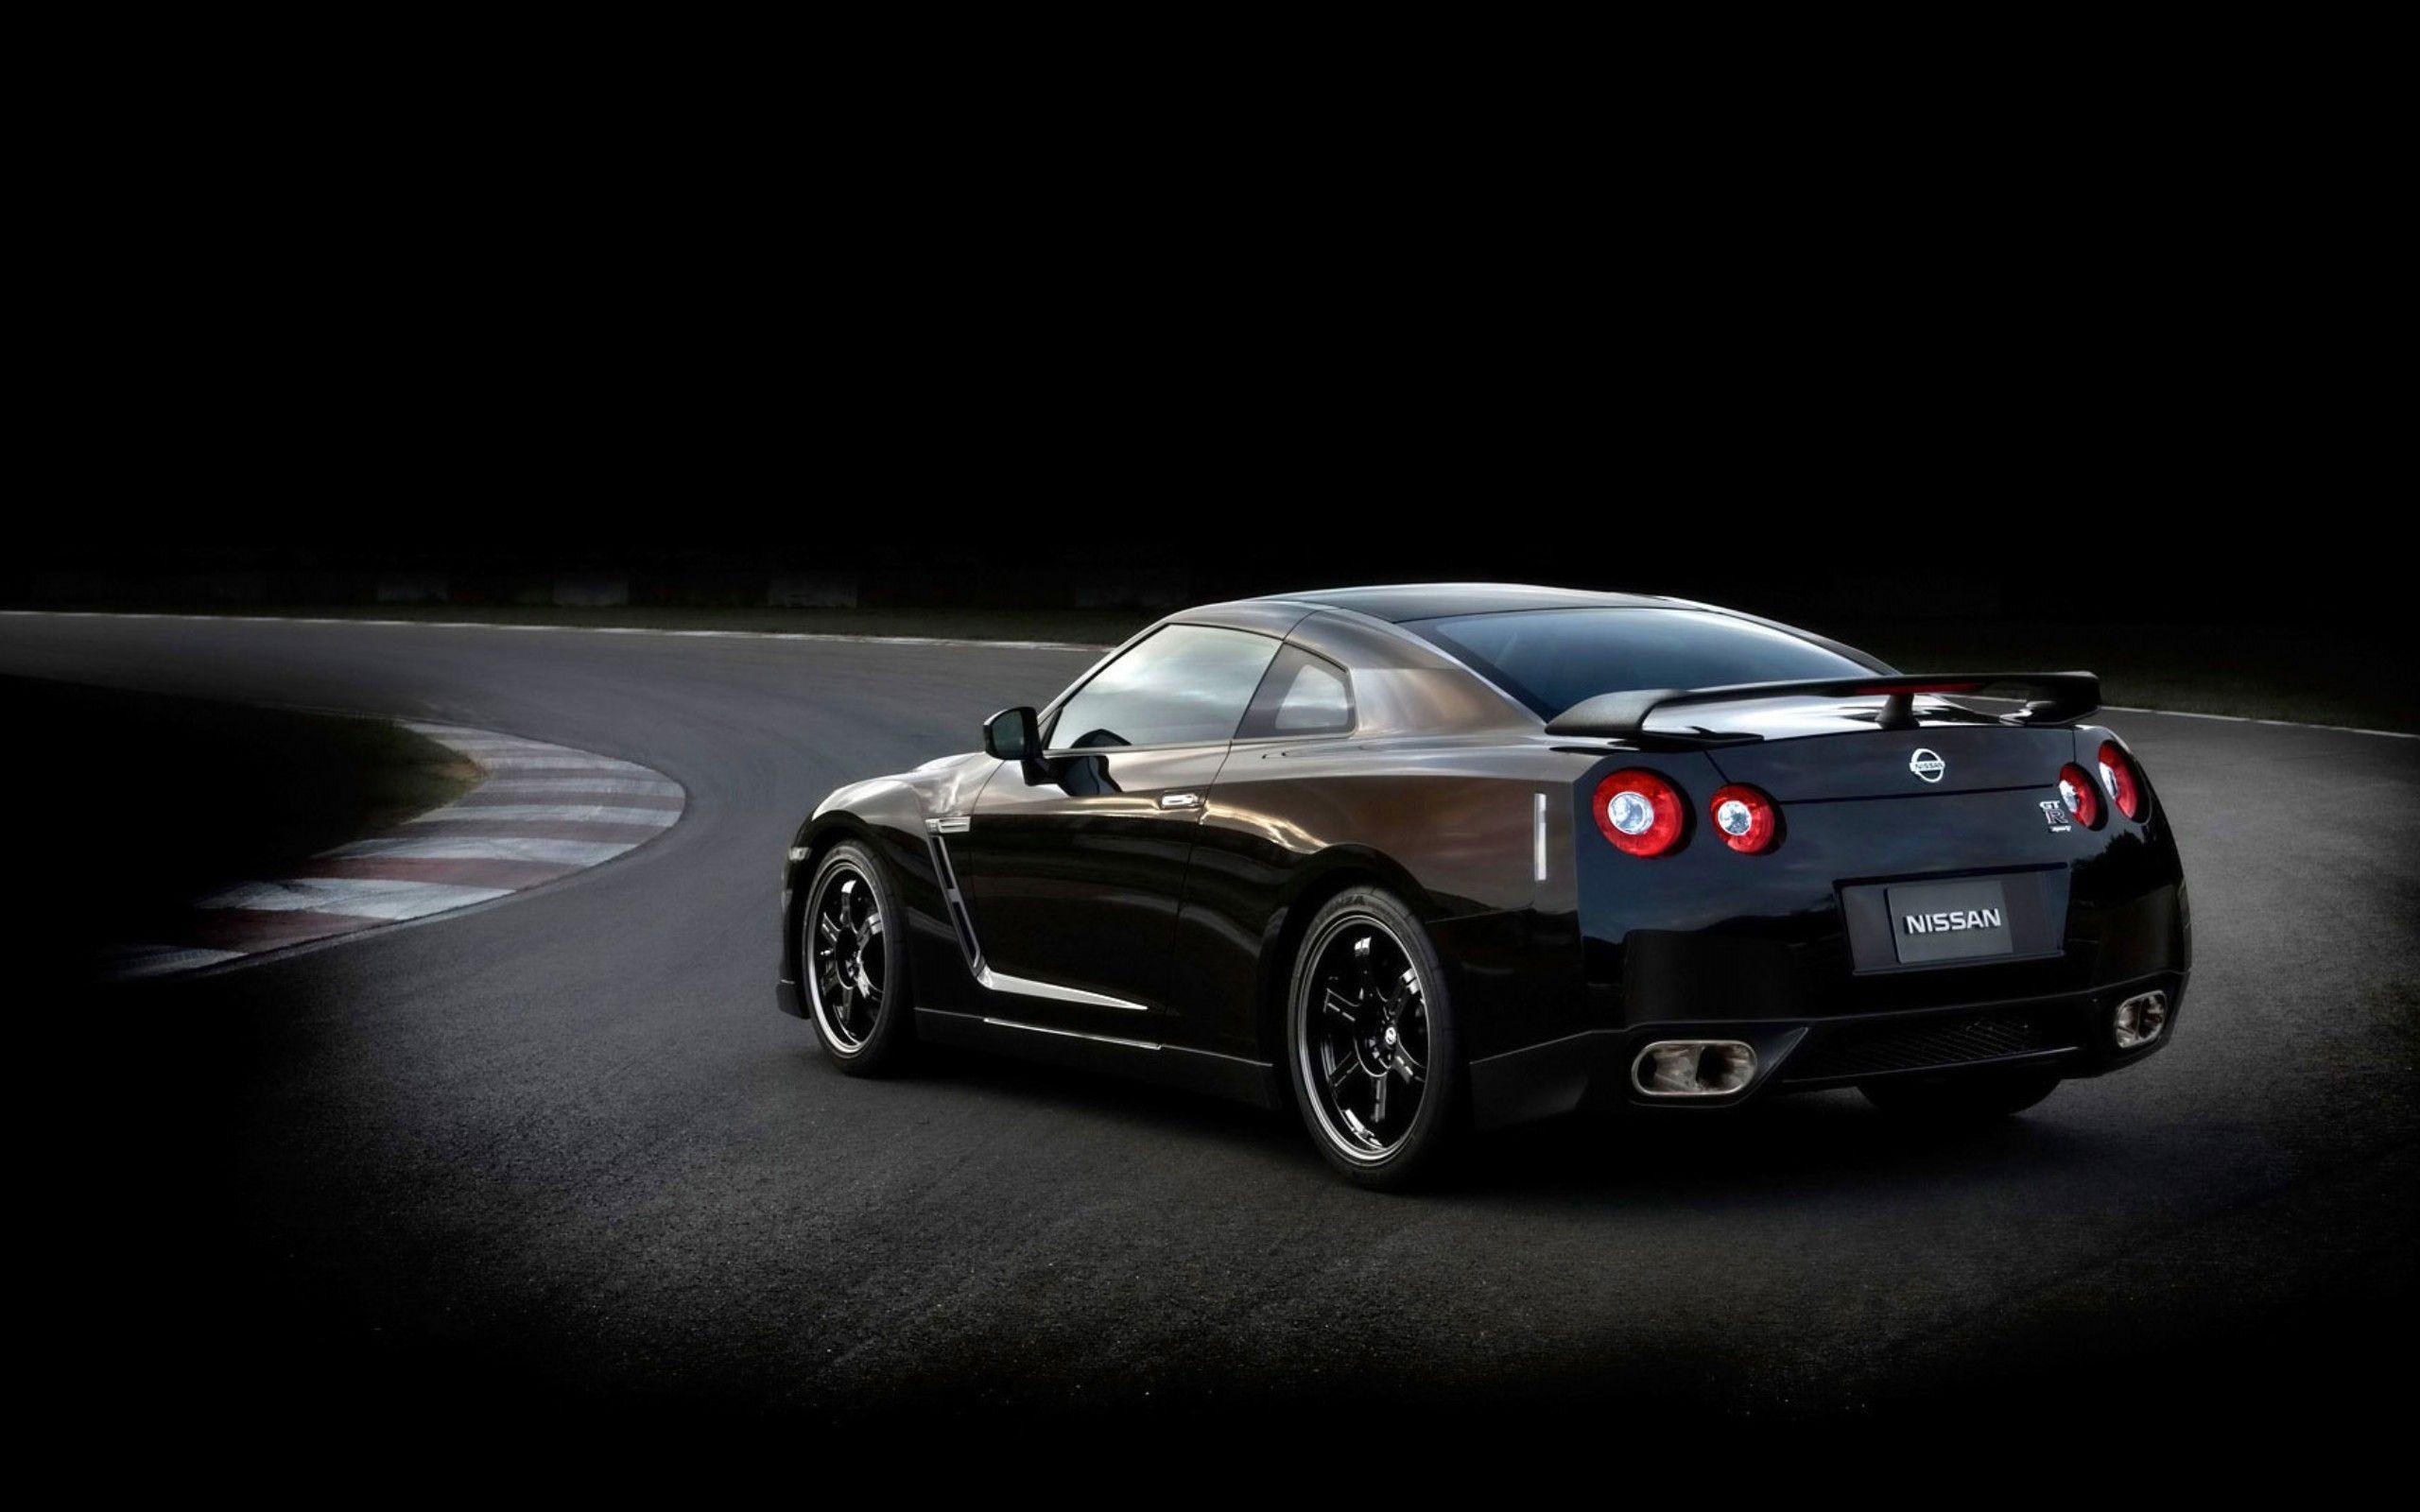 Black Nissan GT R Sports Car HD Wallpaper. TanukinoSippo